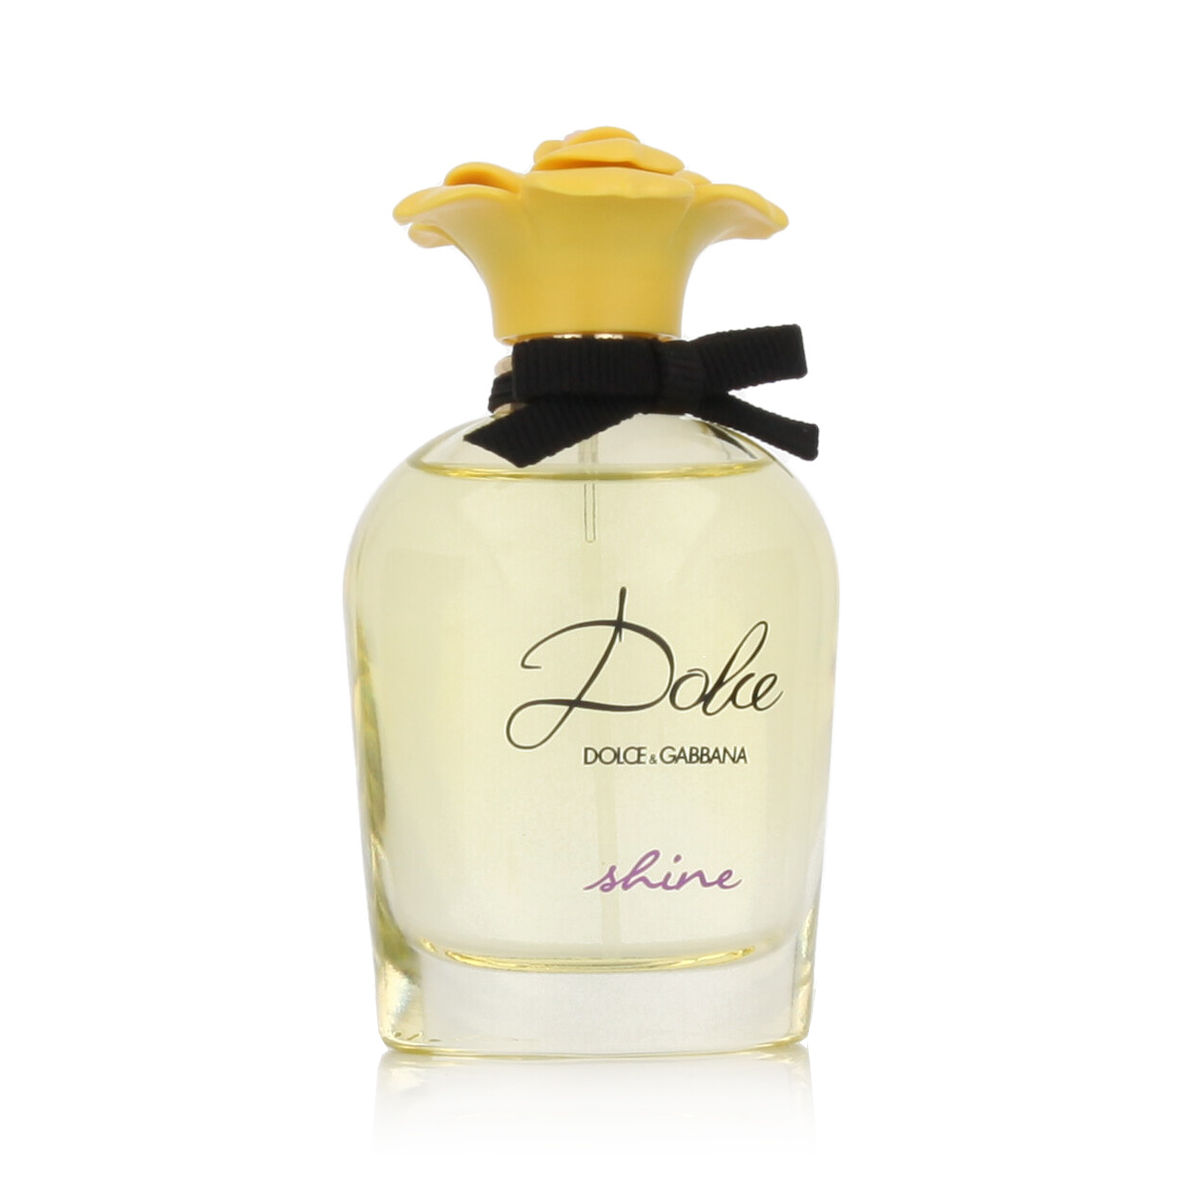 Dolce & Gabbana Dolce Shine 20 ml kvepalų mėginukas (atomaizeris) Moterims